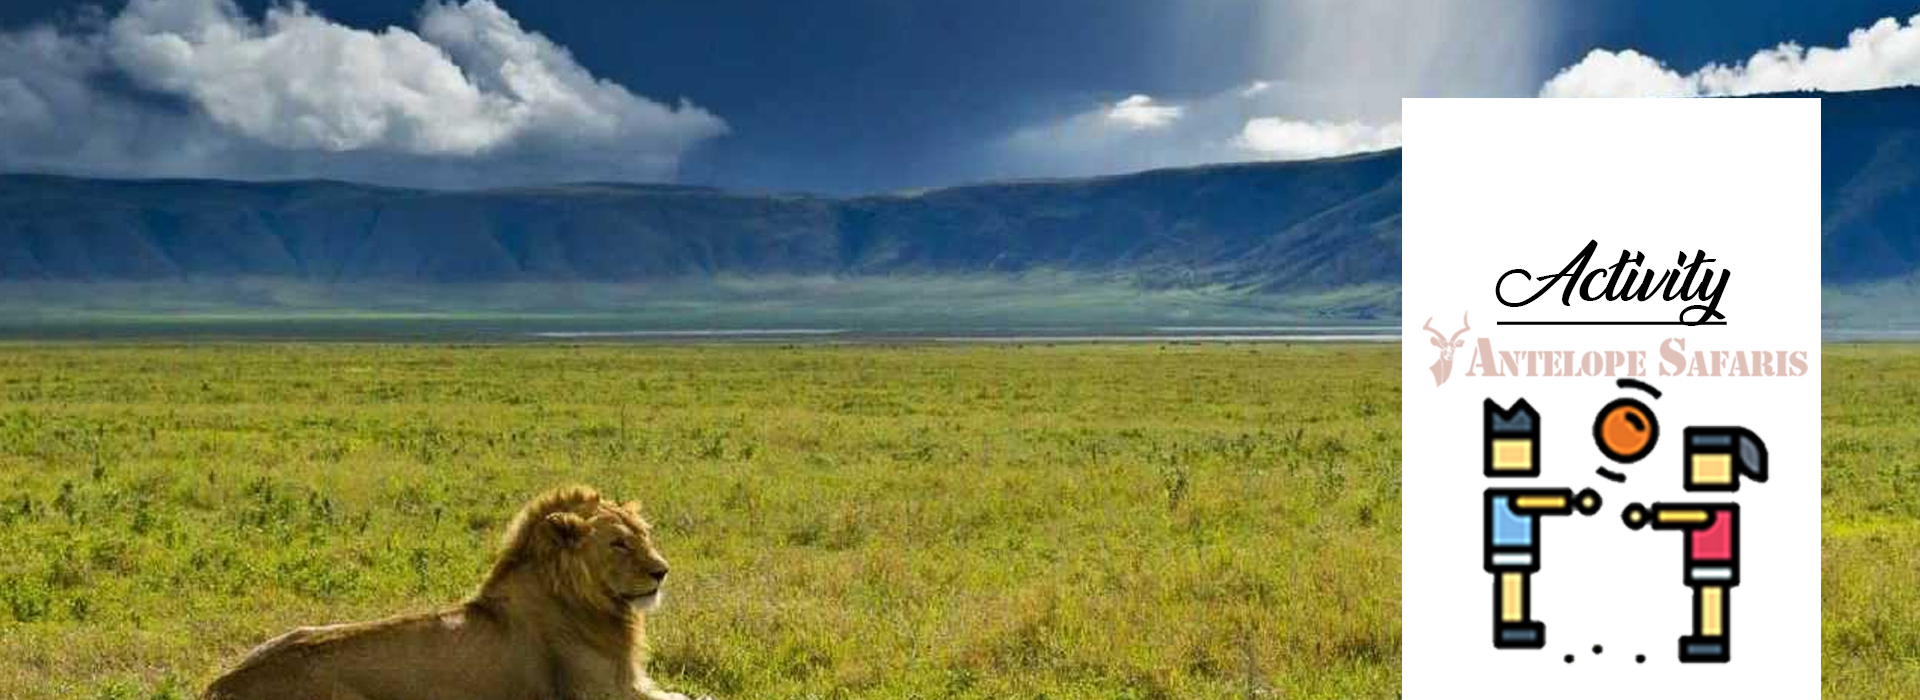 Ngorongoro Area Activities